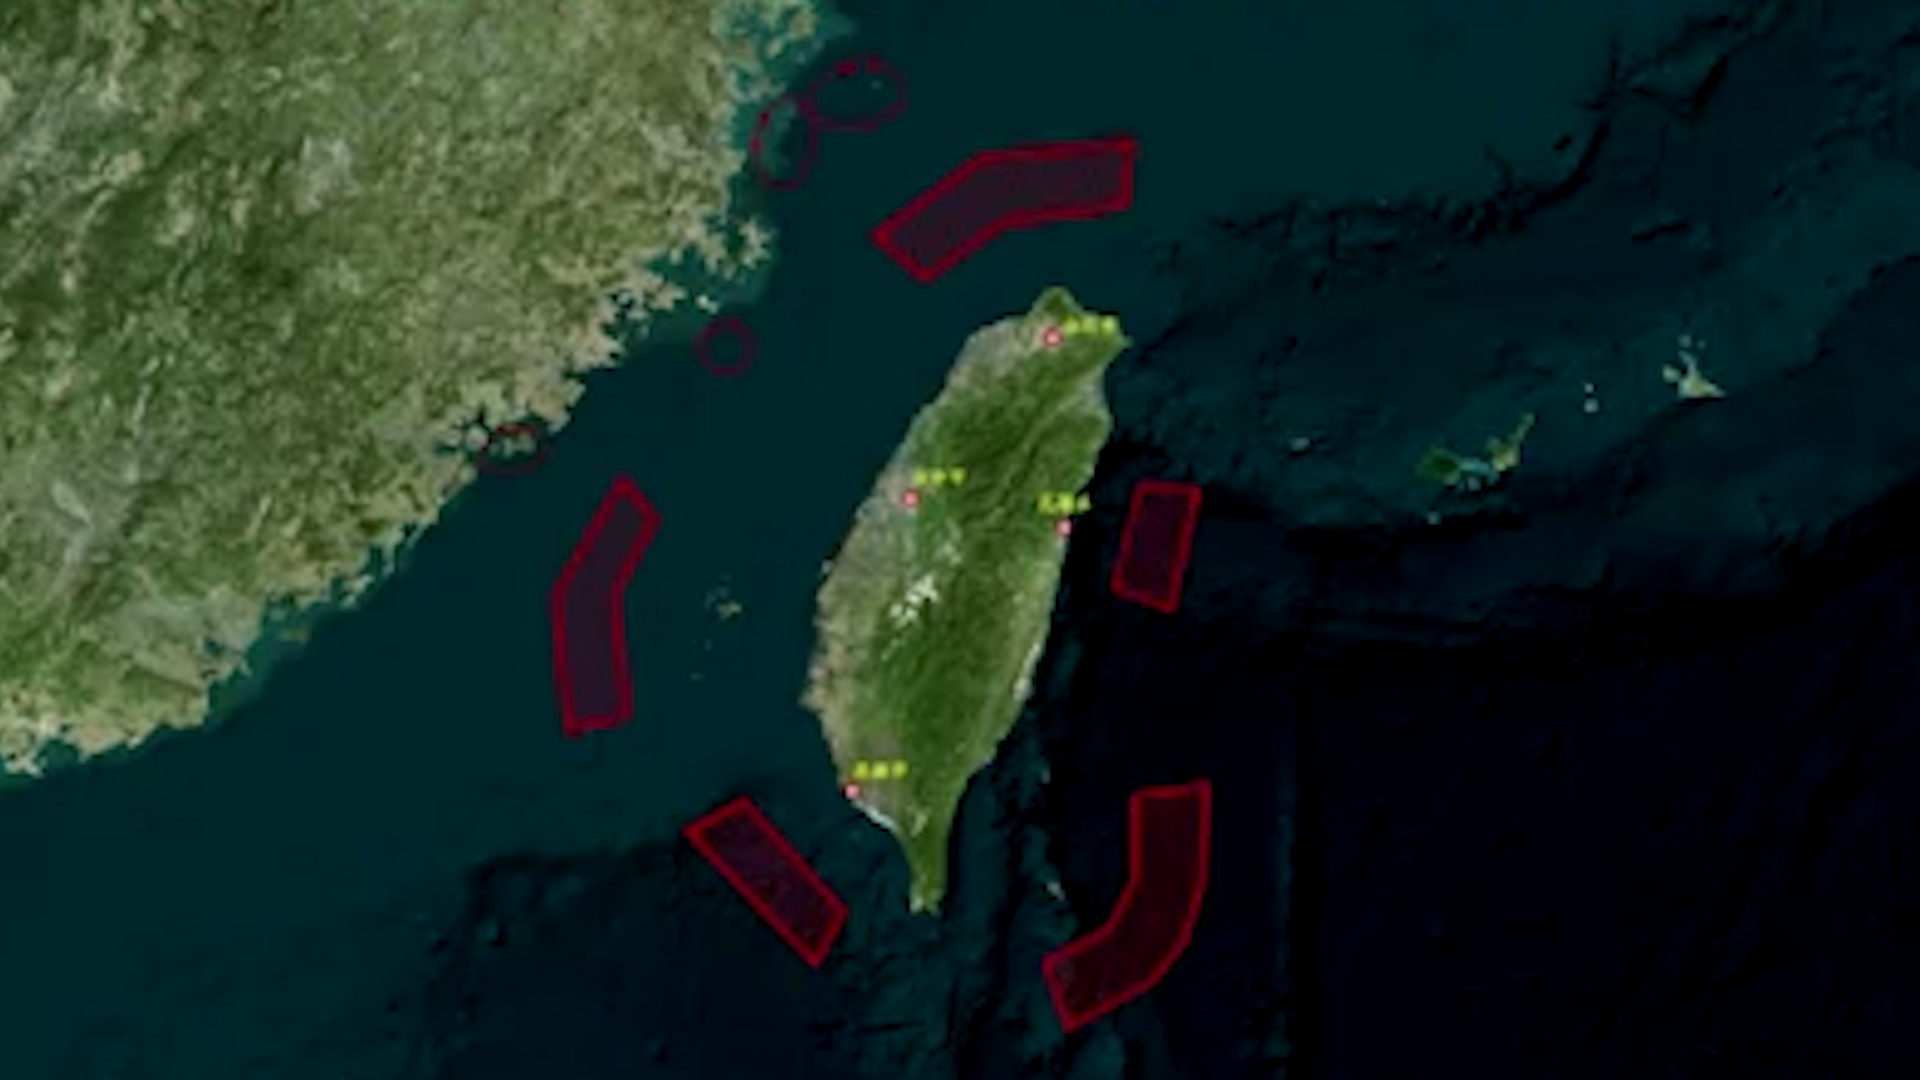 Trung Quốc công bố bản đồ các khu vực tập trận ở 5 khu vực xung quanh Đài Loan và những đảo do Đài Loan kiểm soát gần bờ biển Trung Quốc